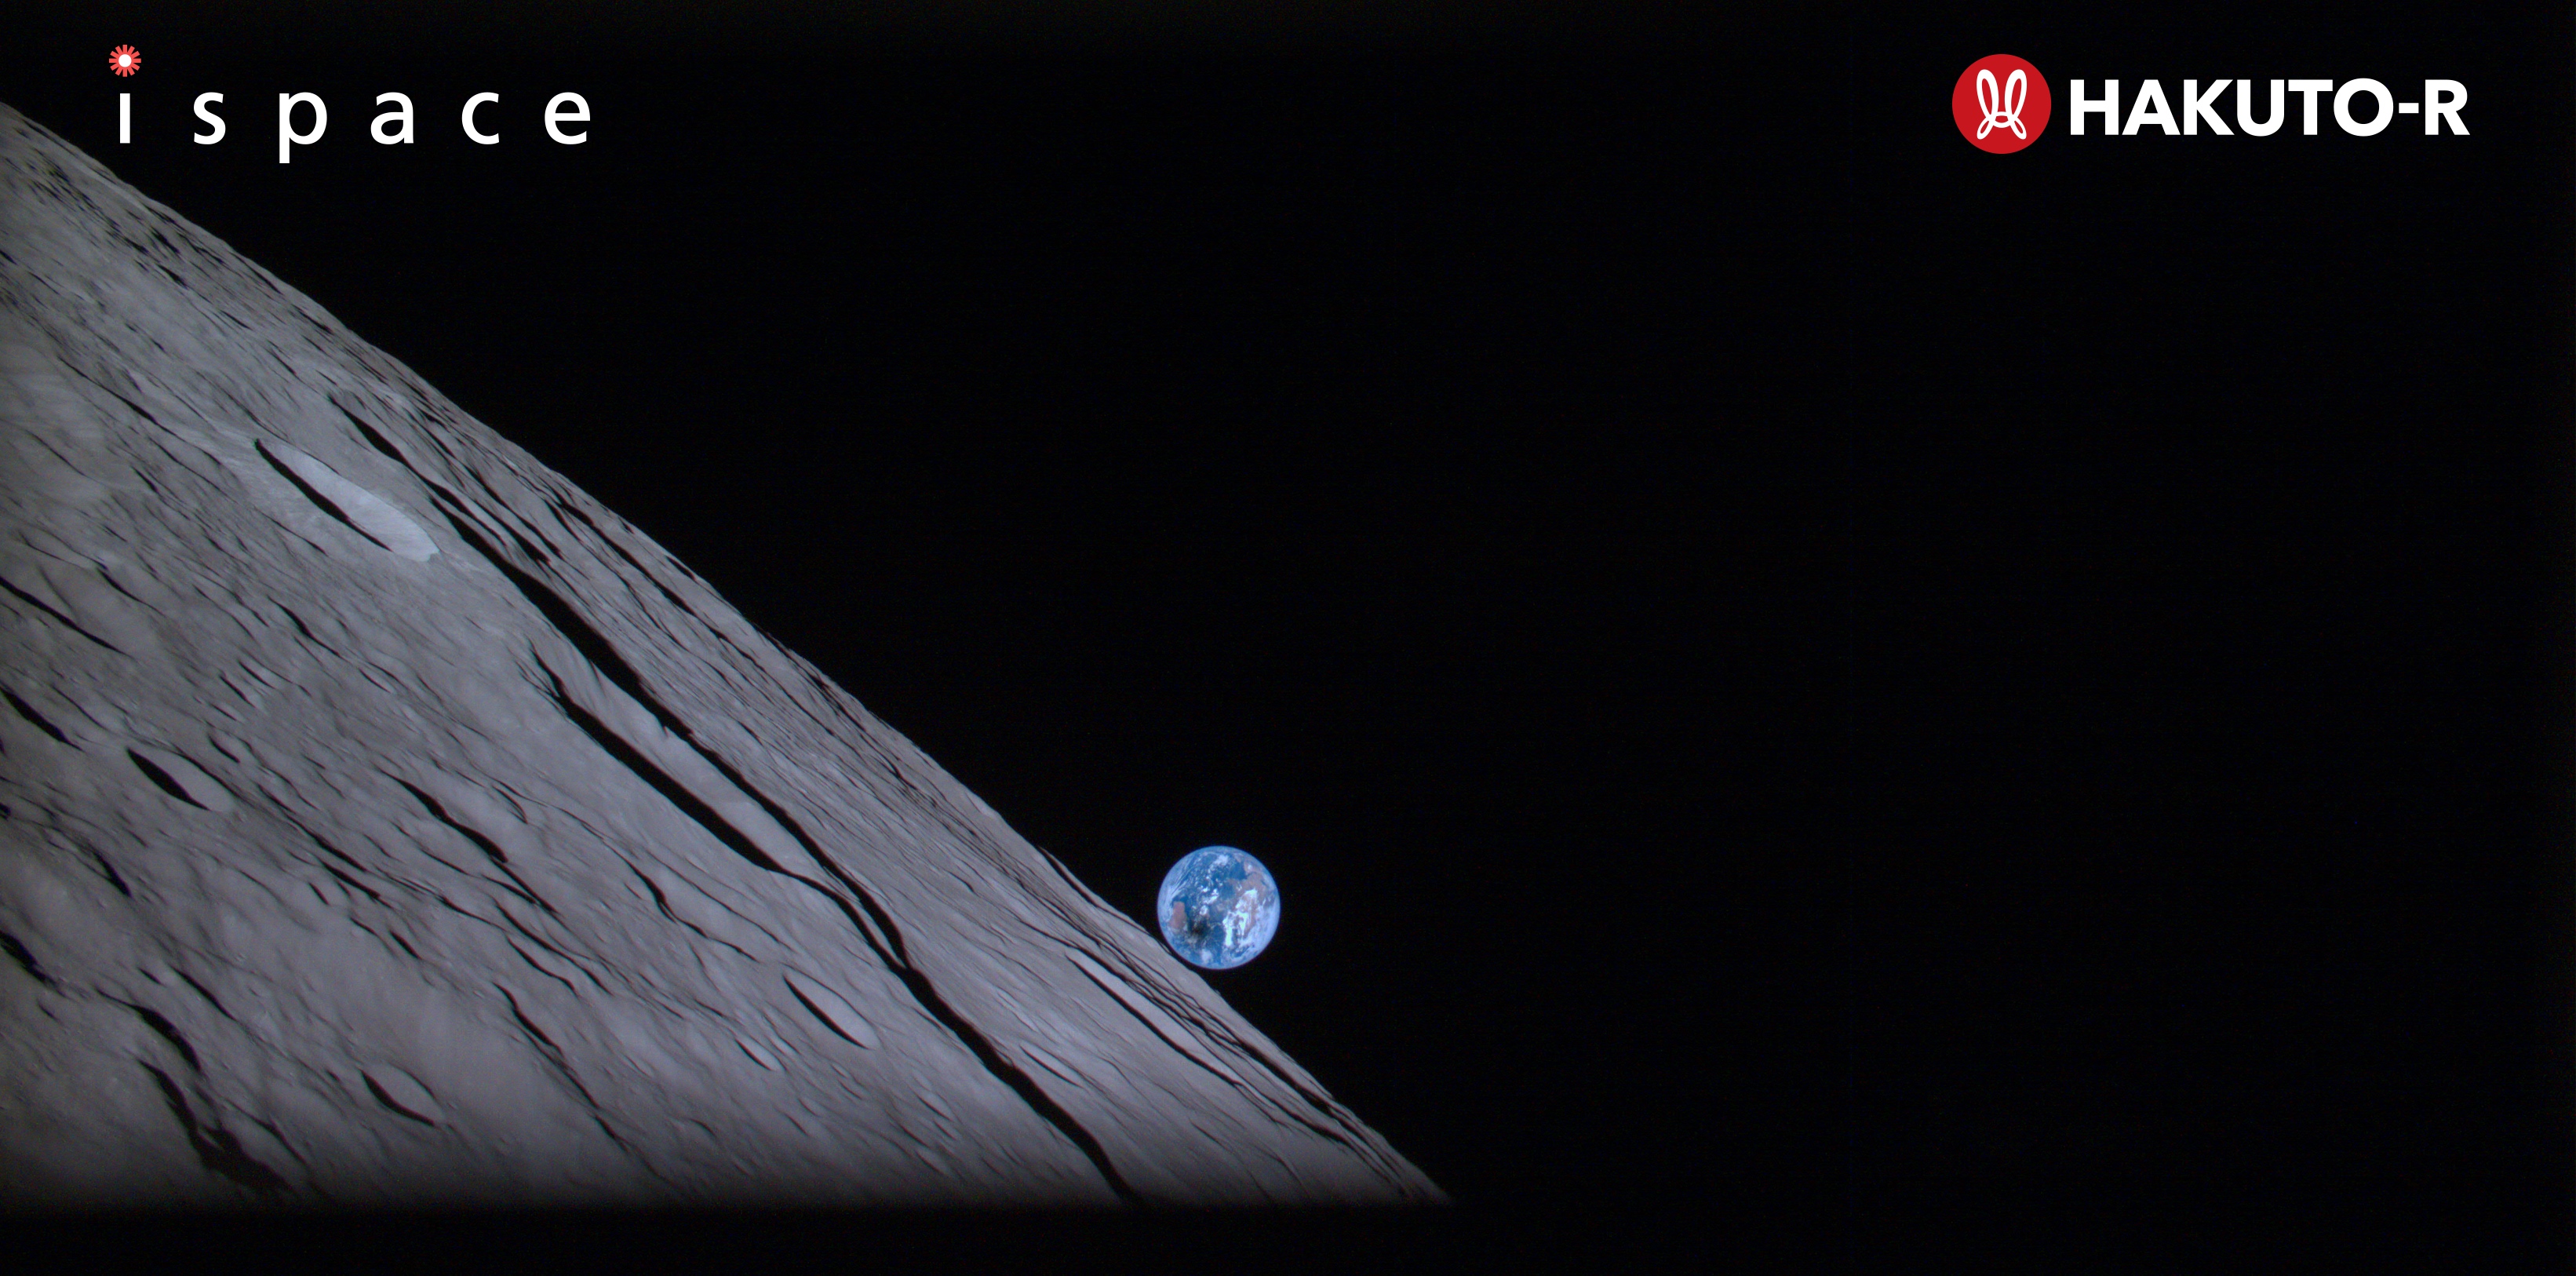 Momentos antes de morir, el módulo de aterrizaje lunar japonés toma una foto gloriosa de la Tierra durante un eclipse solar total